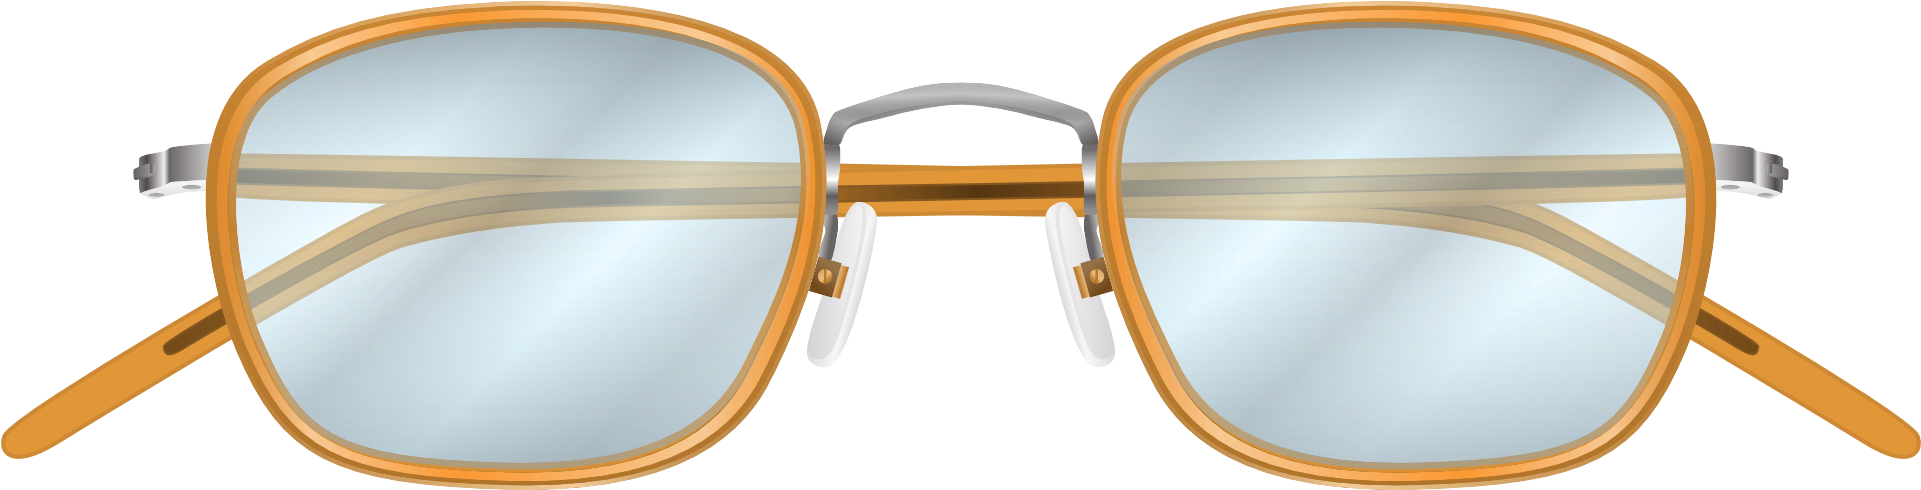 Vintage Round Eyeglasses Transparent Background PNG image